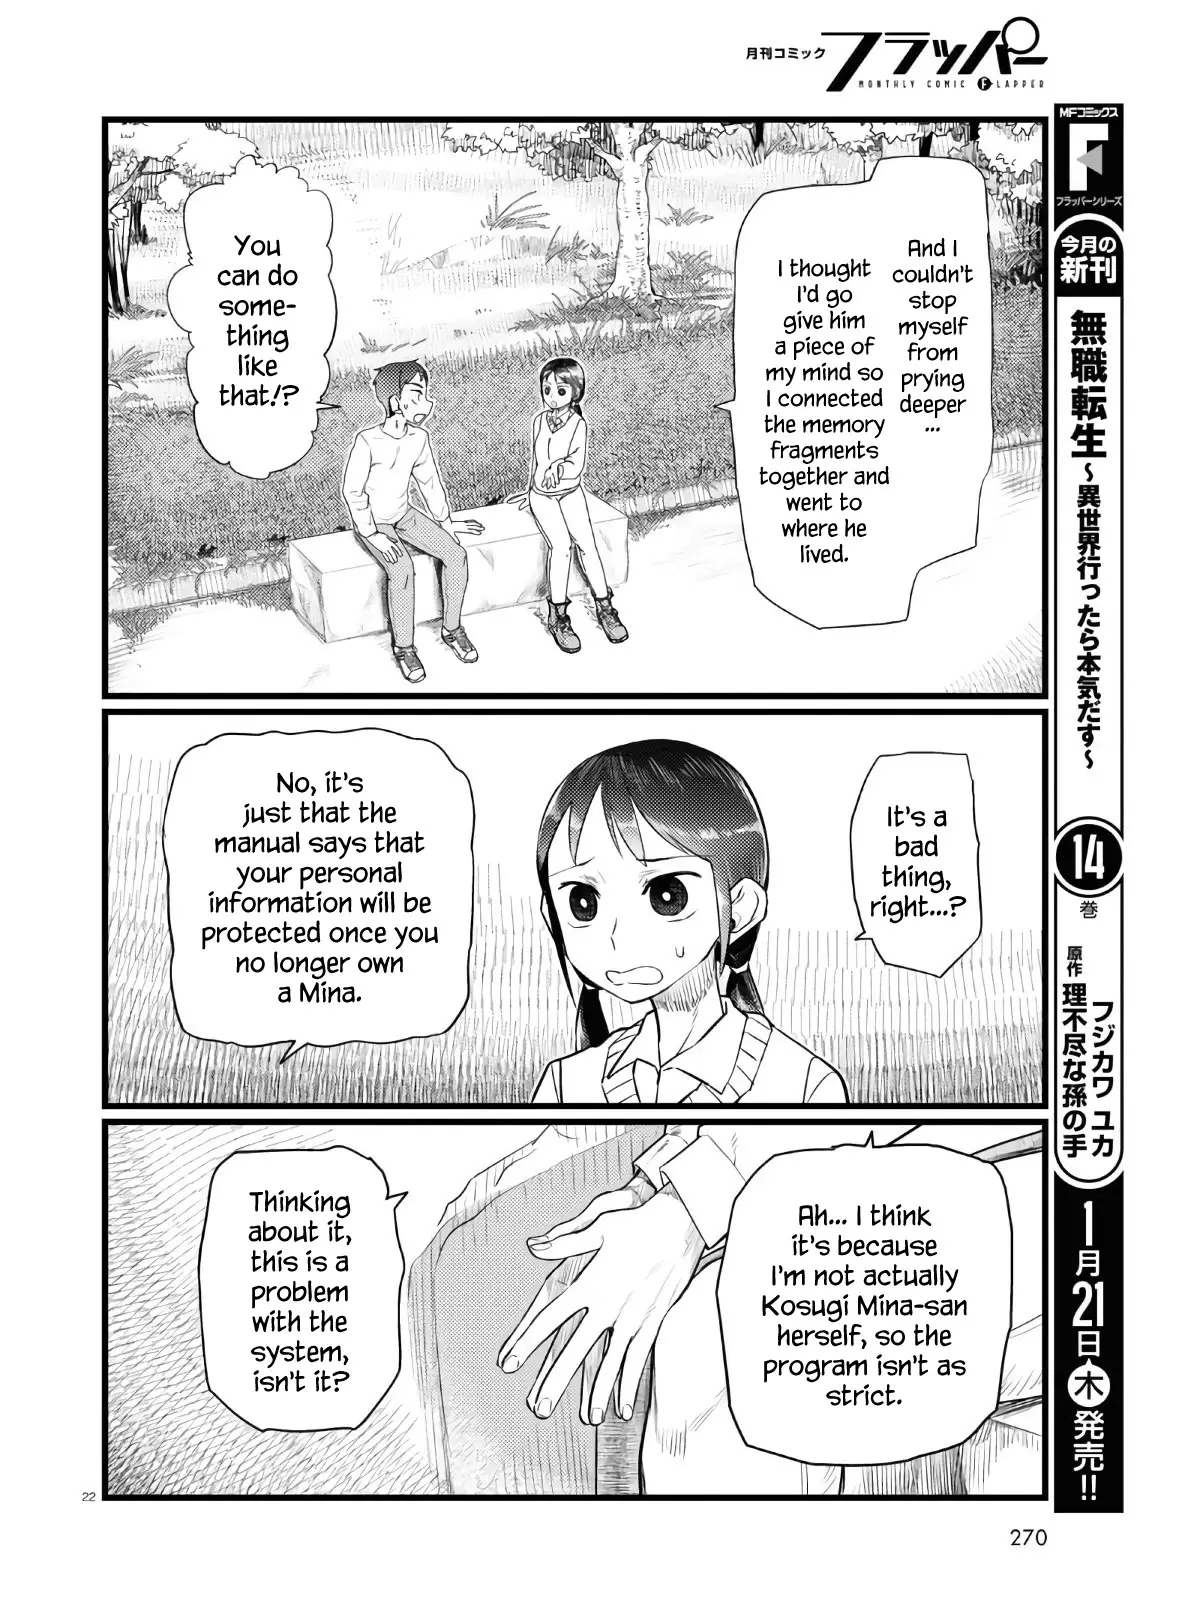 DISC] Boku no Tsuma wa Kanjou ga Nai Chapter 32 : r/manga